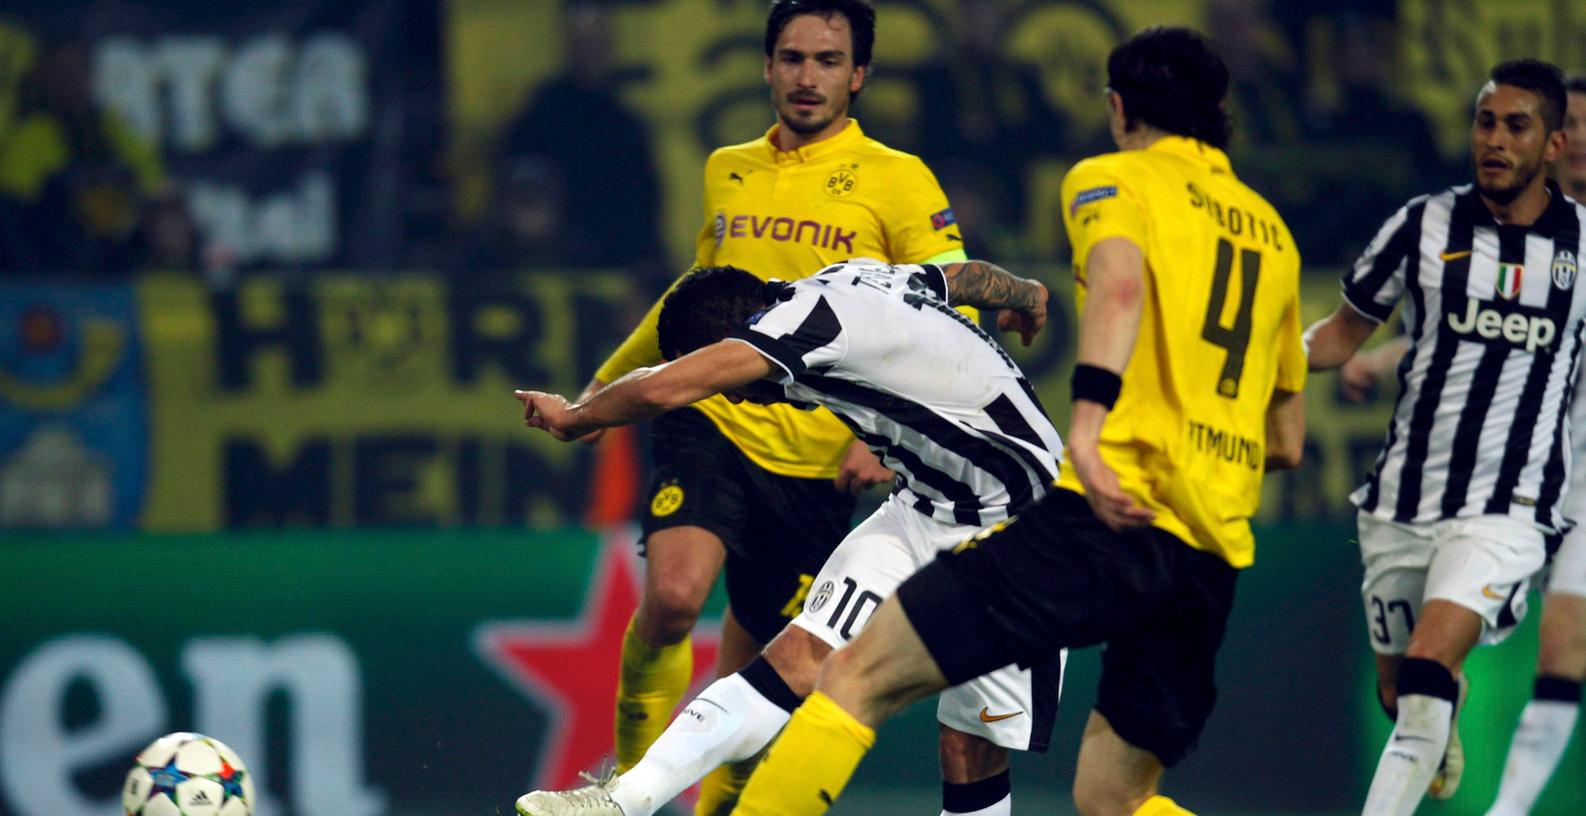 Turiner Lehrstunde: Tevez macht Dortmund traurig 